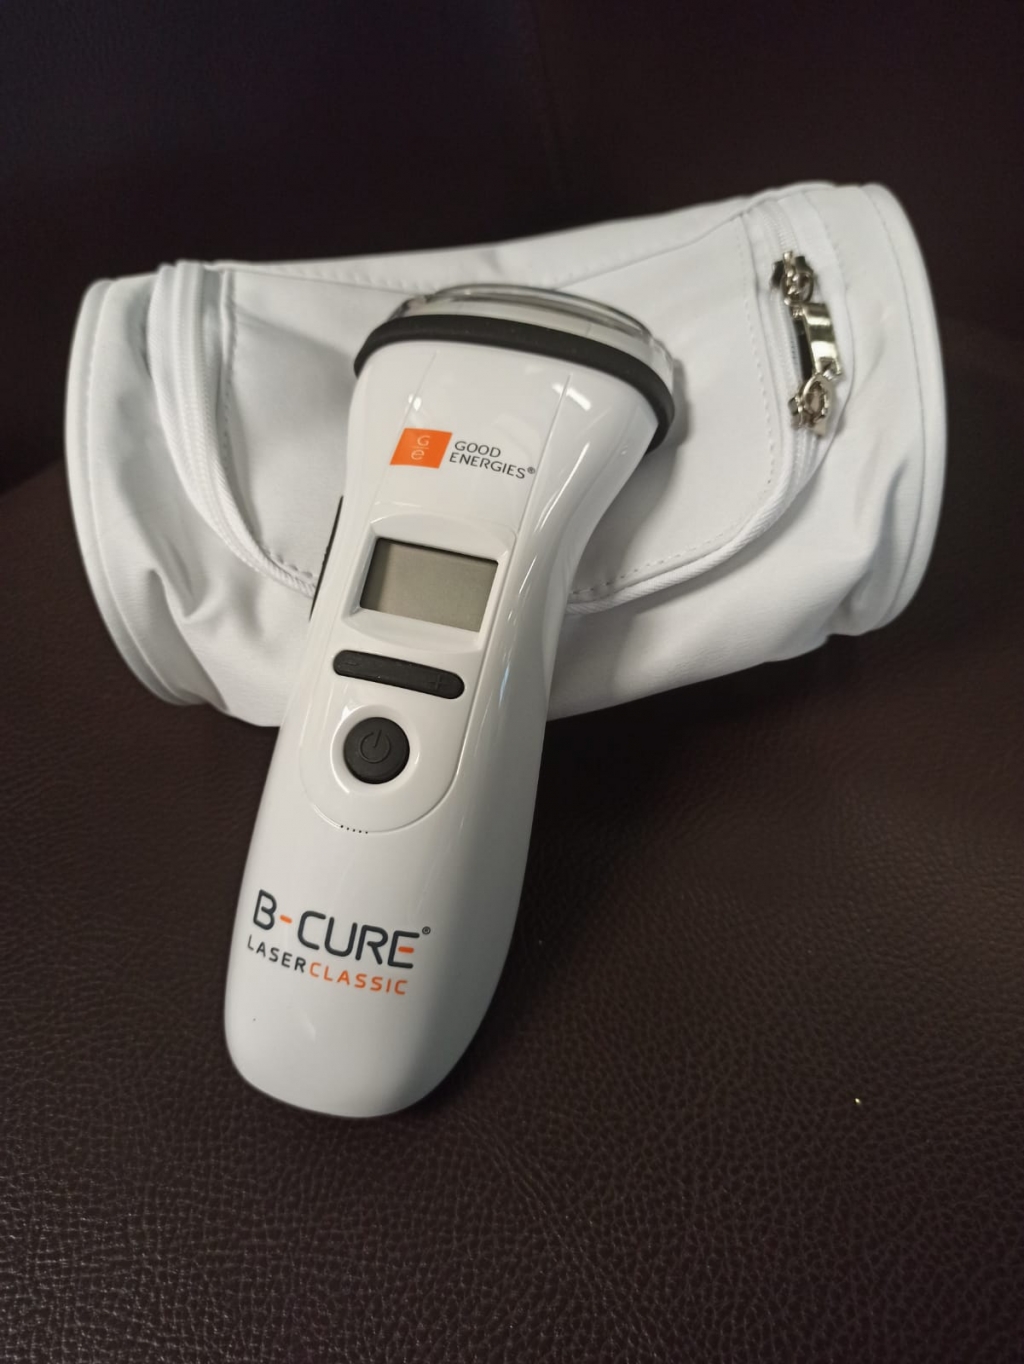 B-Cure Lazer - С этим прибором колени не болят, таблетки больше не нужны